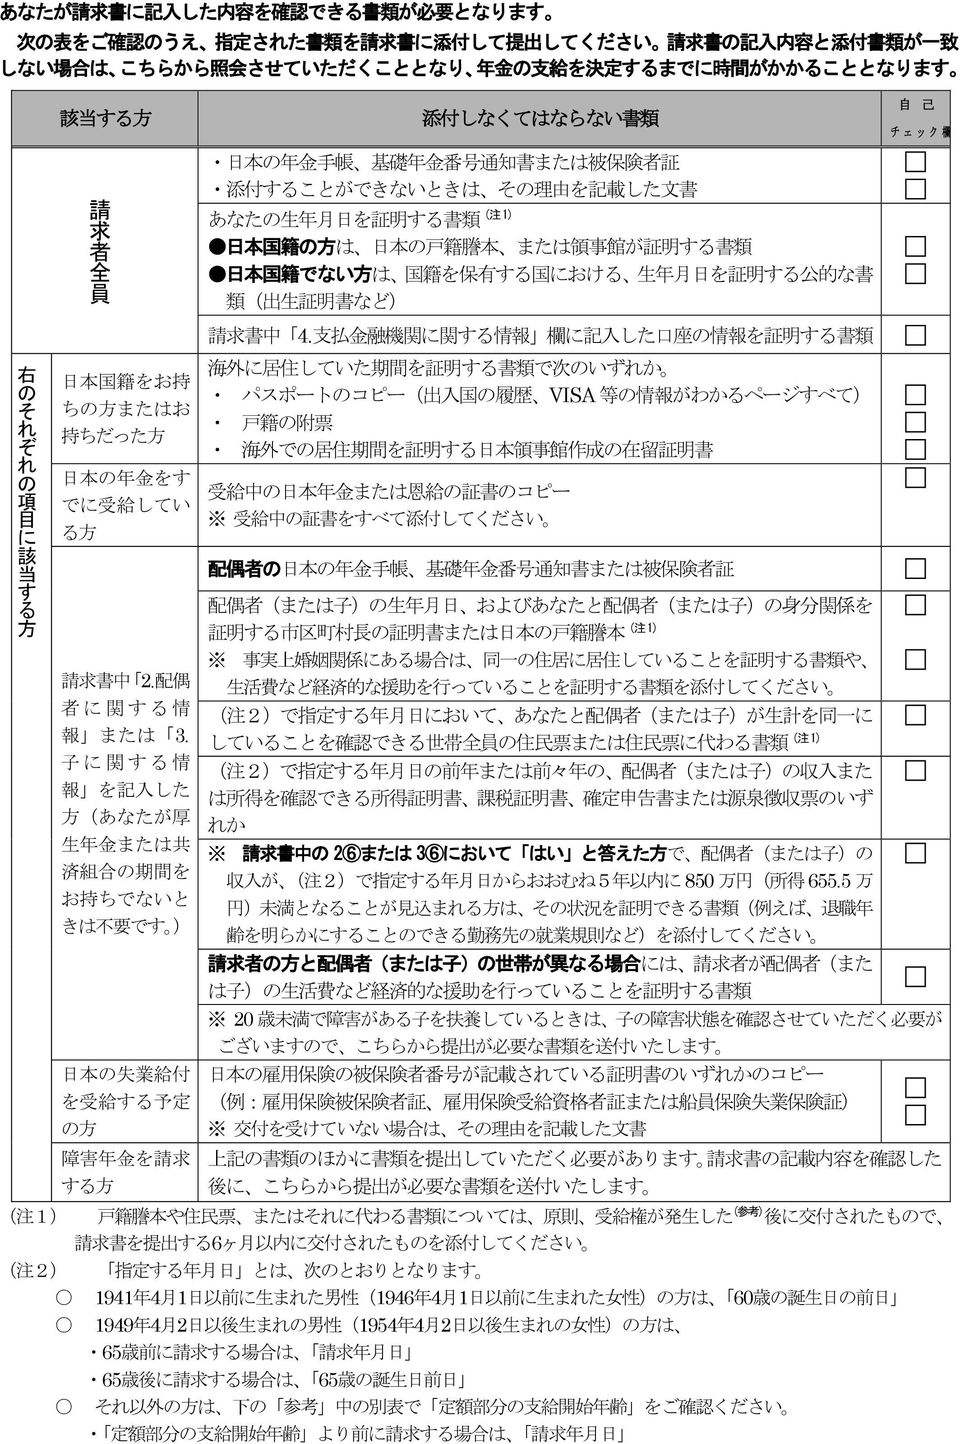 事 館 が 証 明 する 書 類 日 本 国 籍 でない 方 は 国 籍 を 保 有 する 国 における 生 年 月 日 を 証 明 する 公 的 な 書 類 ( 出 生 証 明 書 など) 自 己 チェック 欄 右 の そ れ ぞ れ の 項 目 に 該 当 す る 方 日 本 国 籍 をお 持 ちの 方 またはお 持 ちだった 方 日 本 の 年 金 をす でに 受 給 してい る 方 請